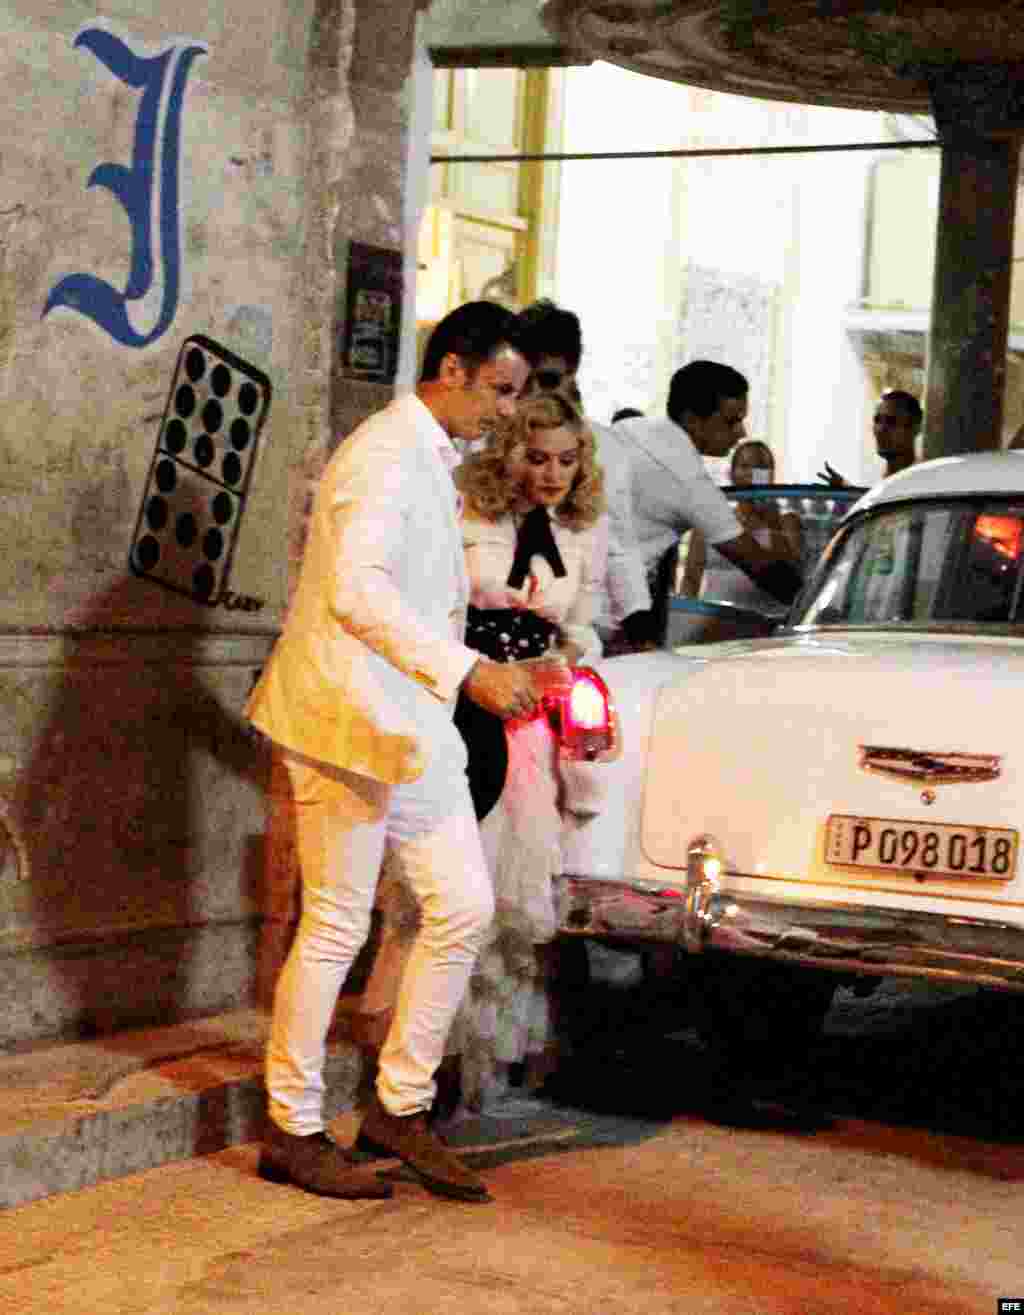  La cantante y compositora Madonna (2-i) llega hoy, martes 16 de agosto del 2016, al restaurante "La Guarida" en La Habana (Cuba). Madonna, que hoy cumple 58 años, celebró el día con un paseo por las pintorescas calles del lugar, que también recorrió a bo